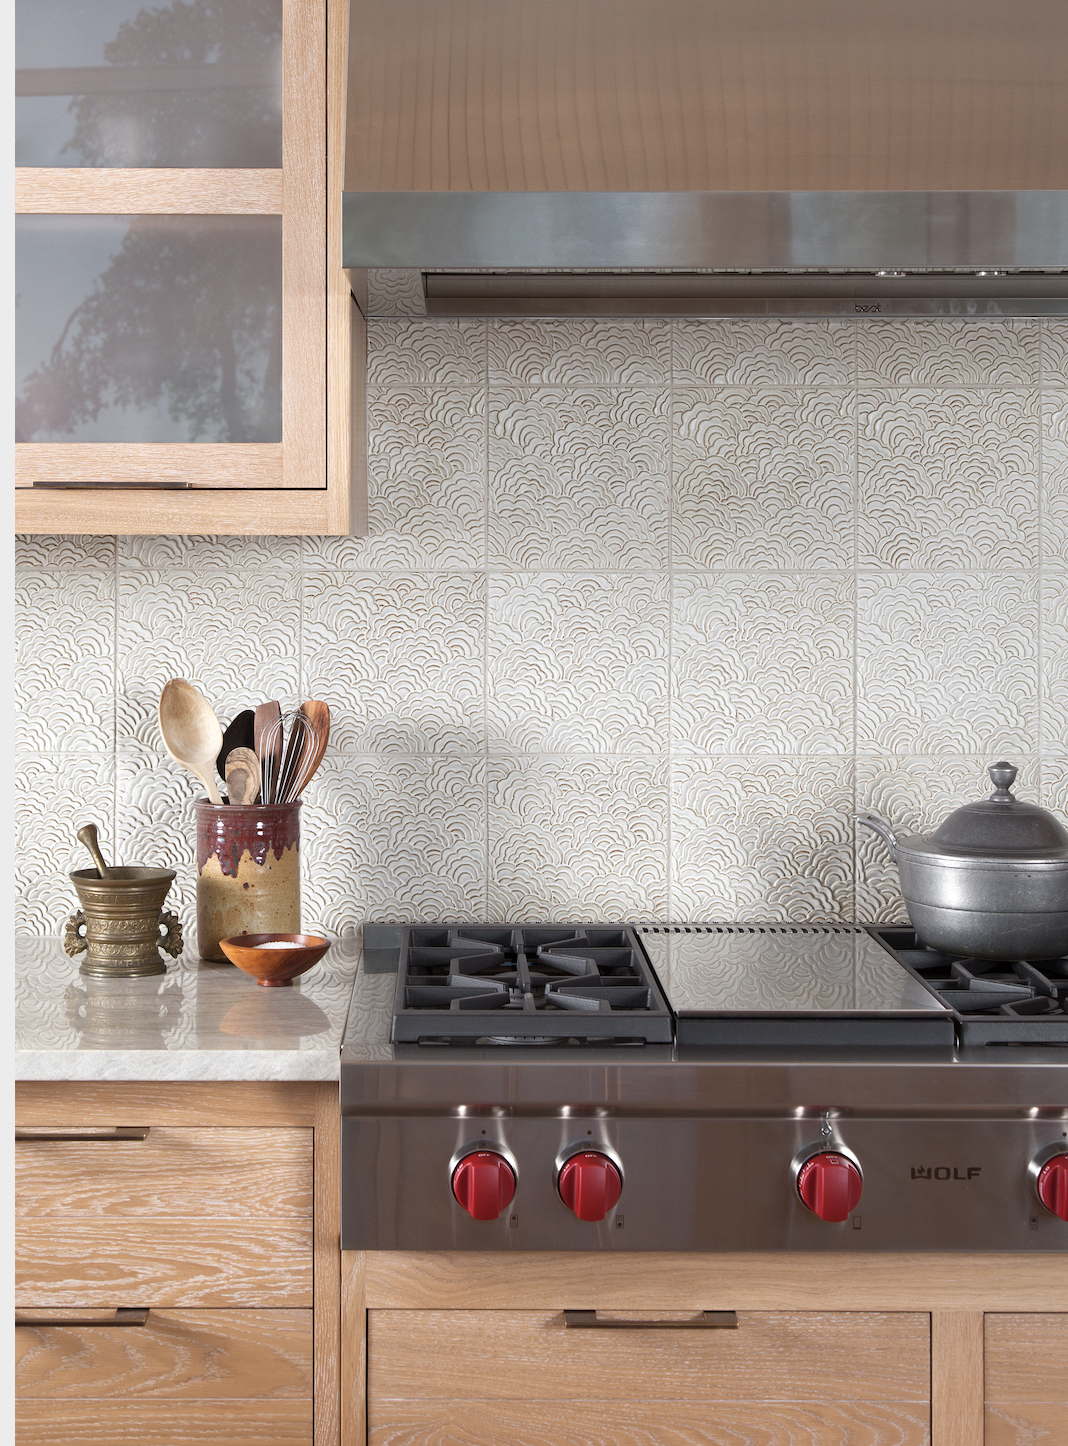 18 Best Kitchen Backsplash Ideas 18   Tile Designs for Kitchens